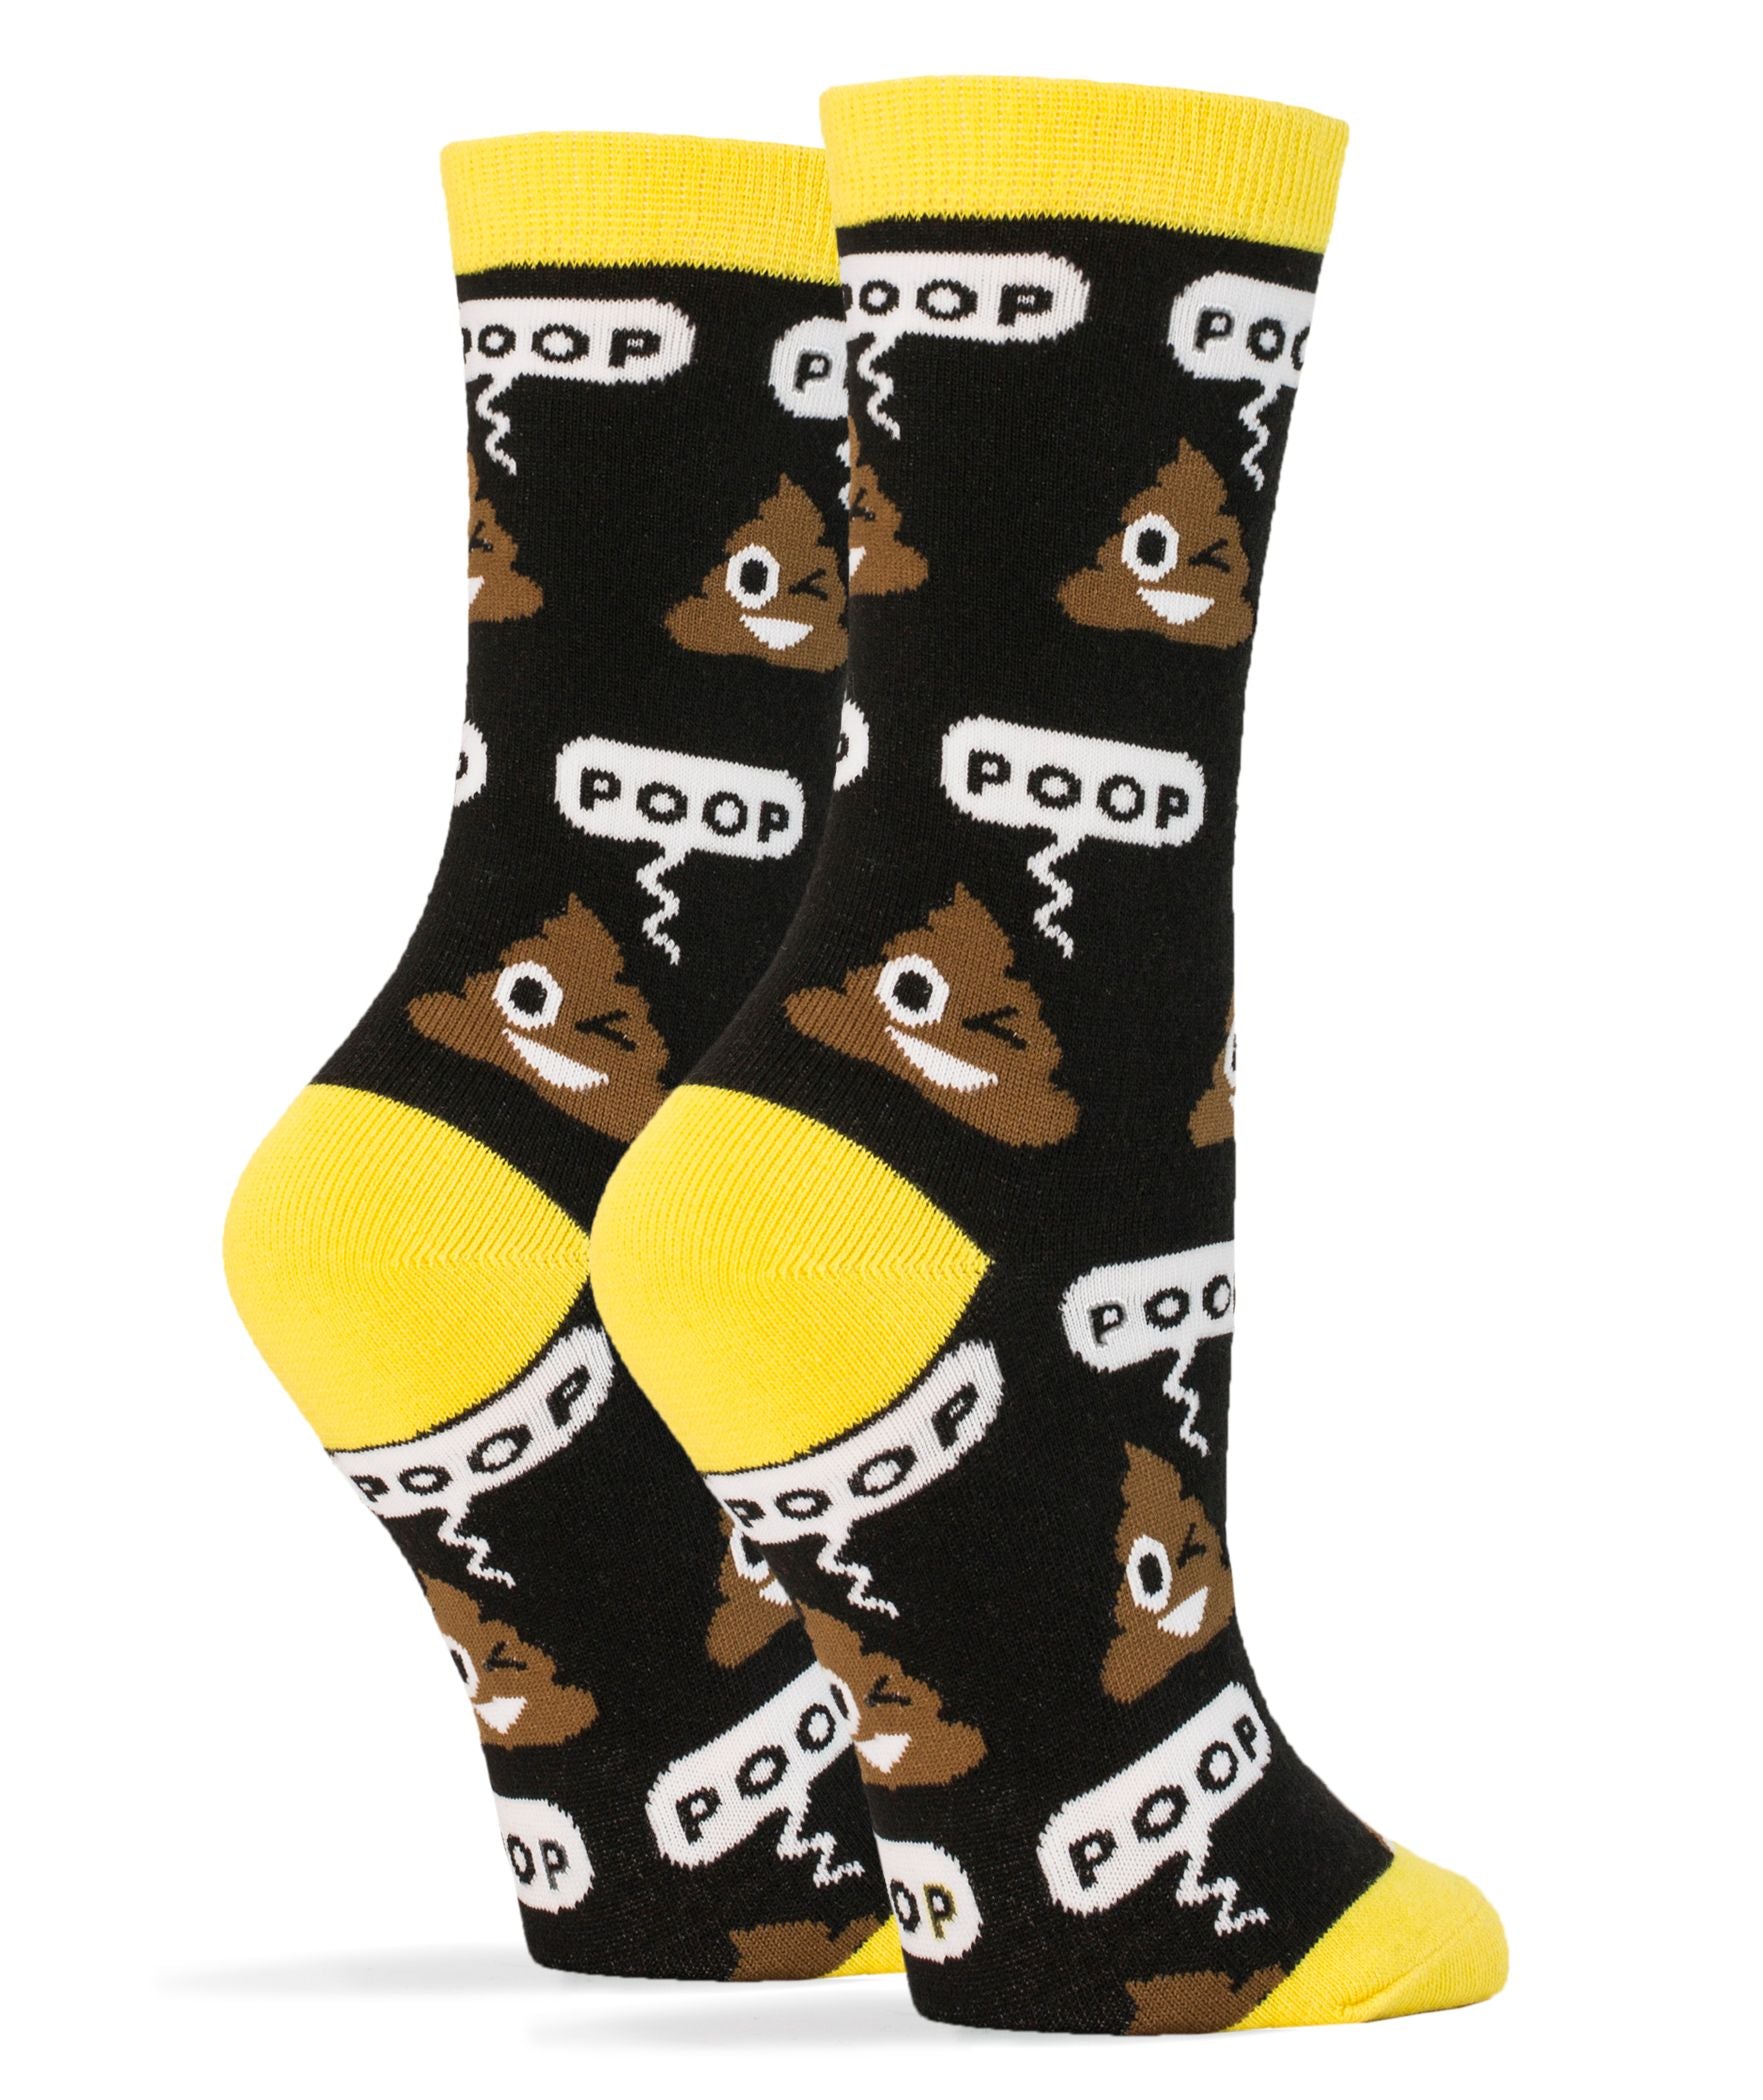 Poop! Socks - 0